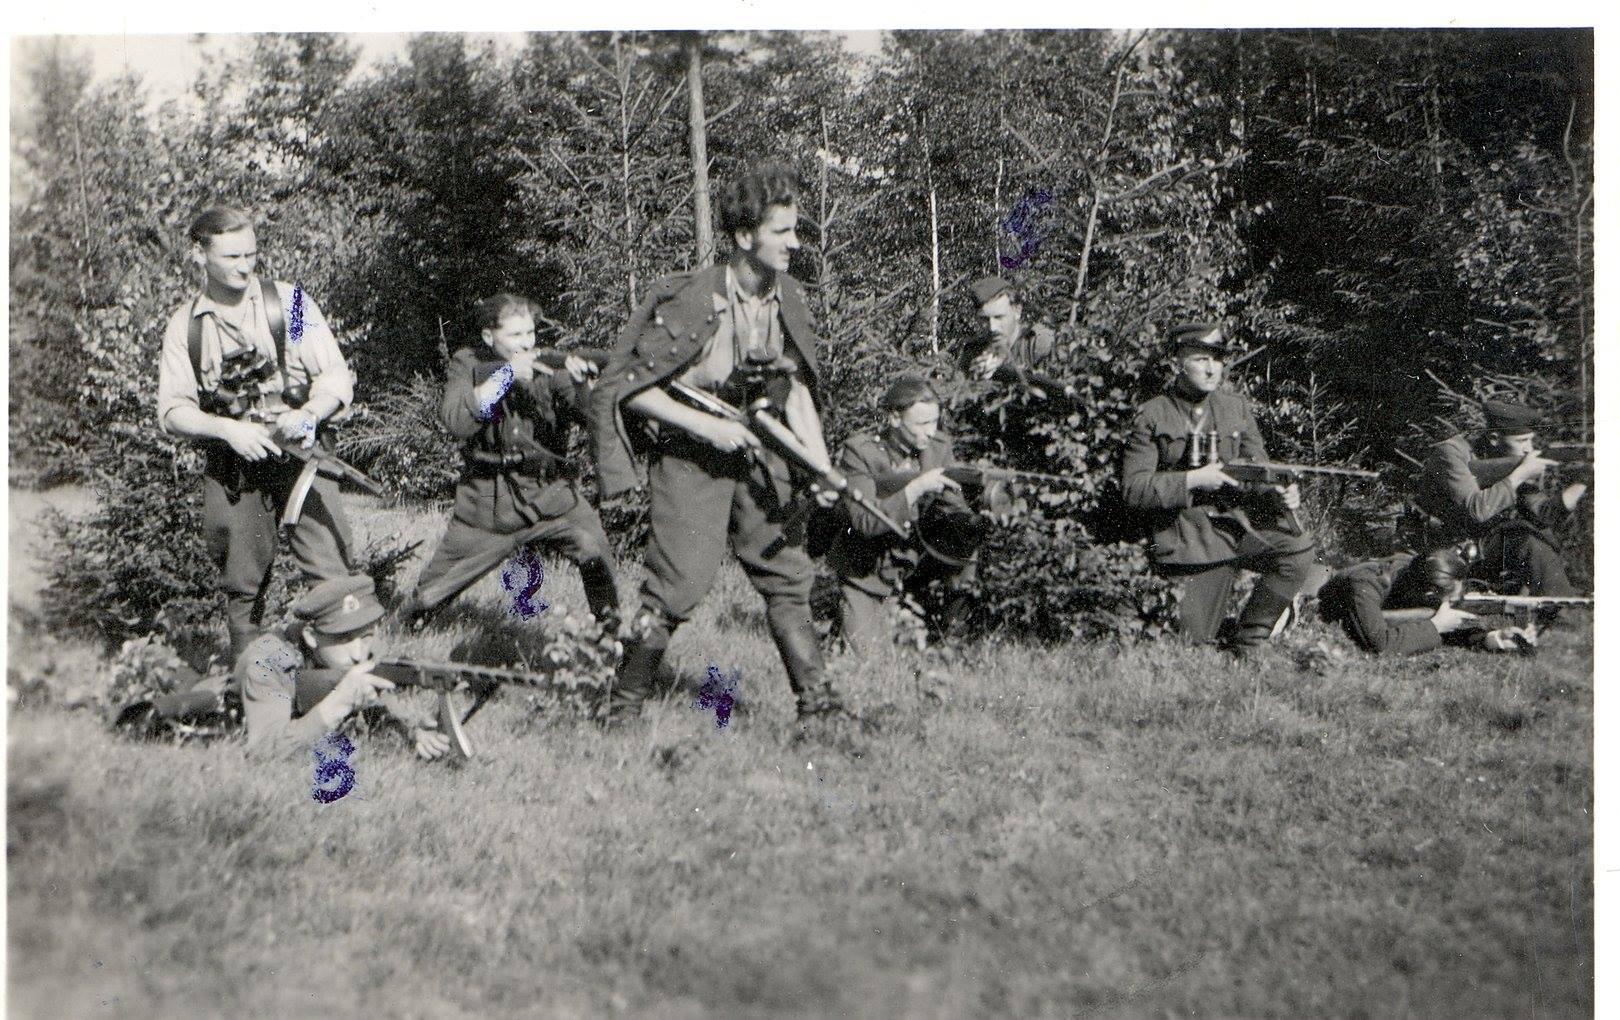 1948 m. spalio 27 d. Vaclovo Voverio - Žaibo vadovaujama partizanų grupė surengė pasalą netoli Grendavės, Onuškio MVD įgulai, kurios metu buvo nukauta 18 (kitais duomenimis 19) priešo kareivių, paimta daug ginklų. Partizanai nenukentėjo.